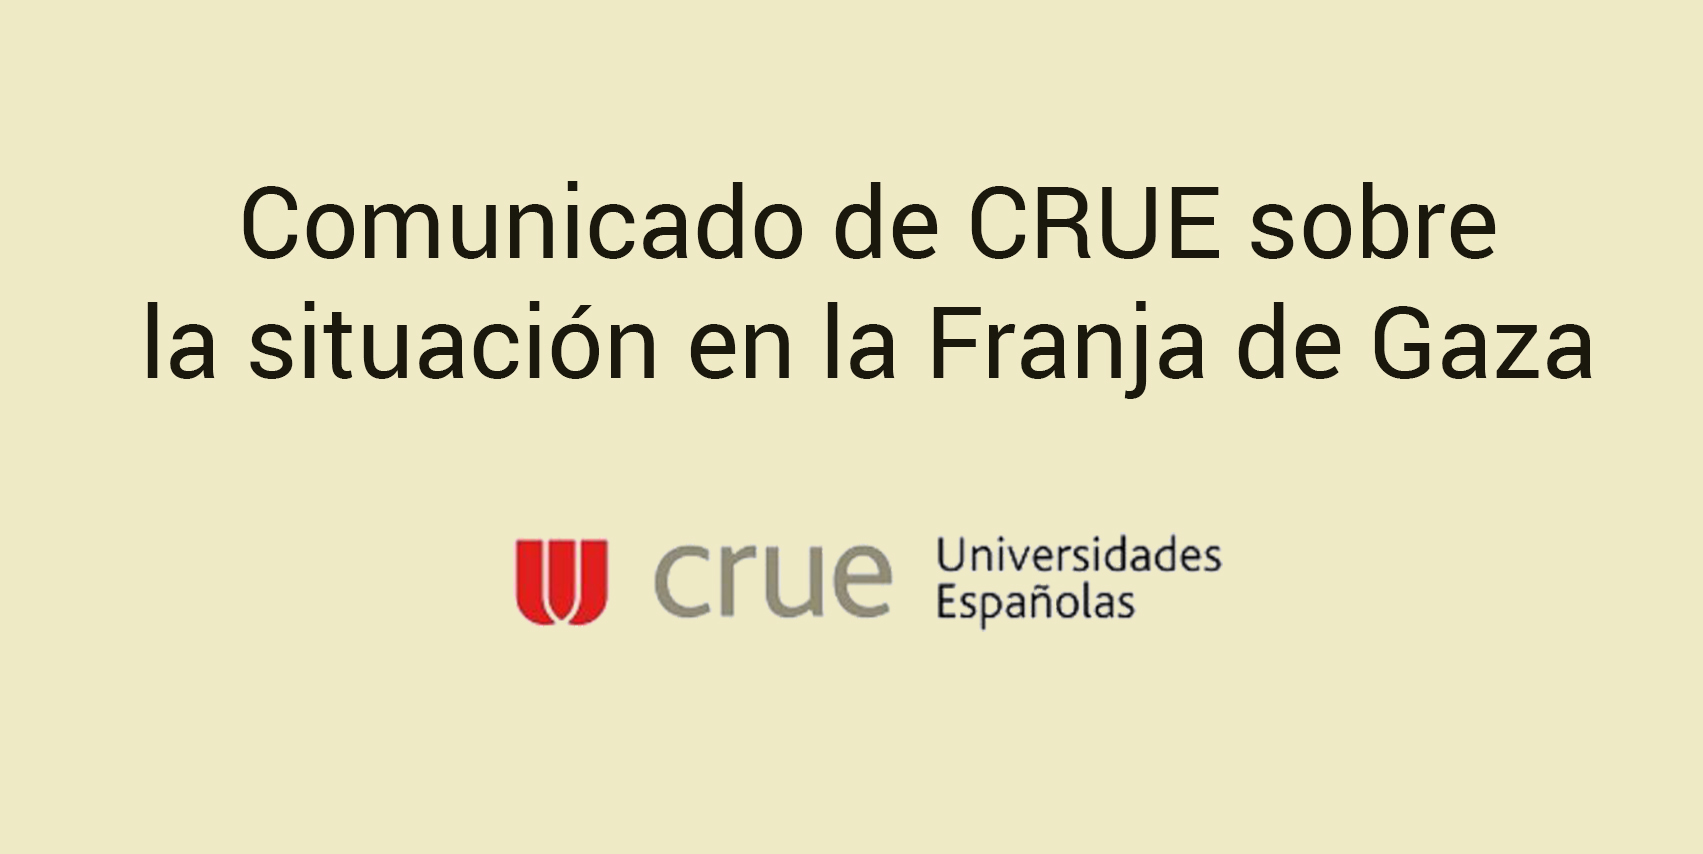 Comunicado de la CRUE Universidades Españolas